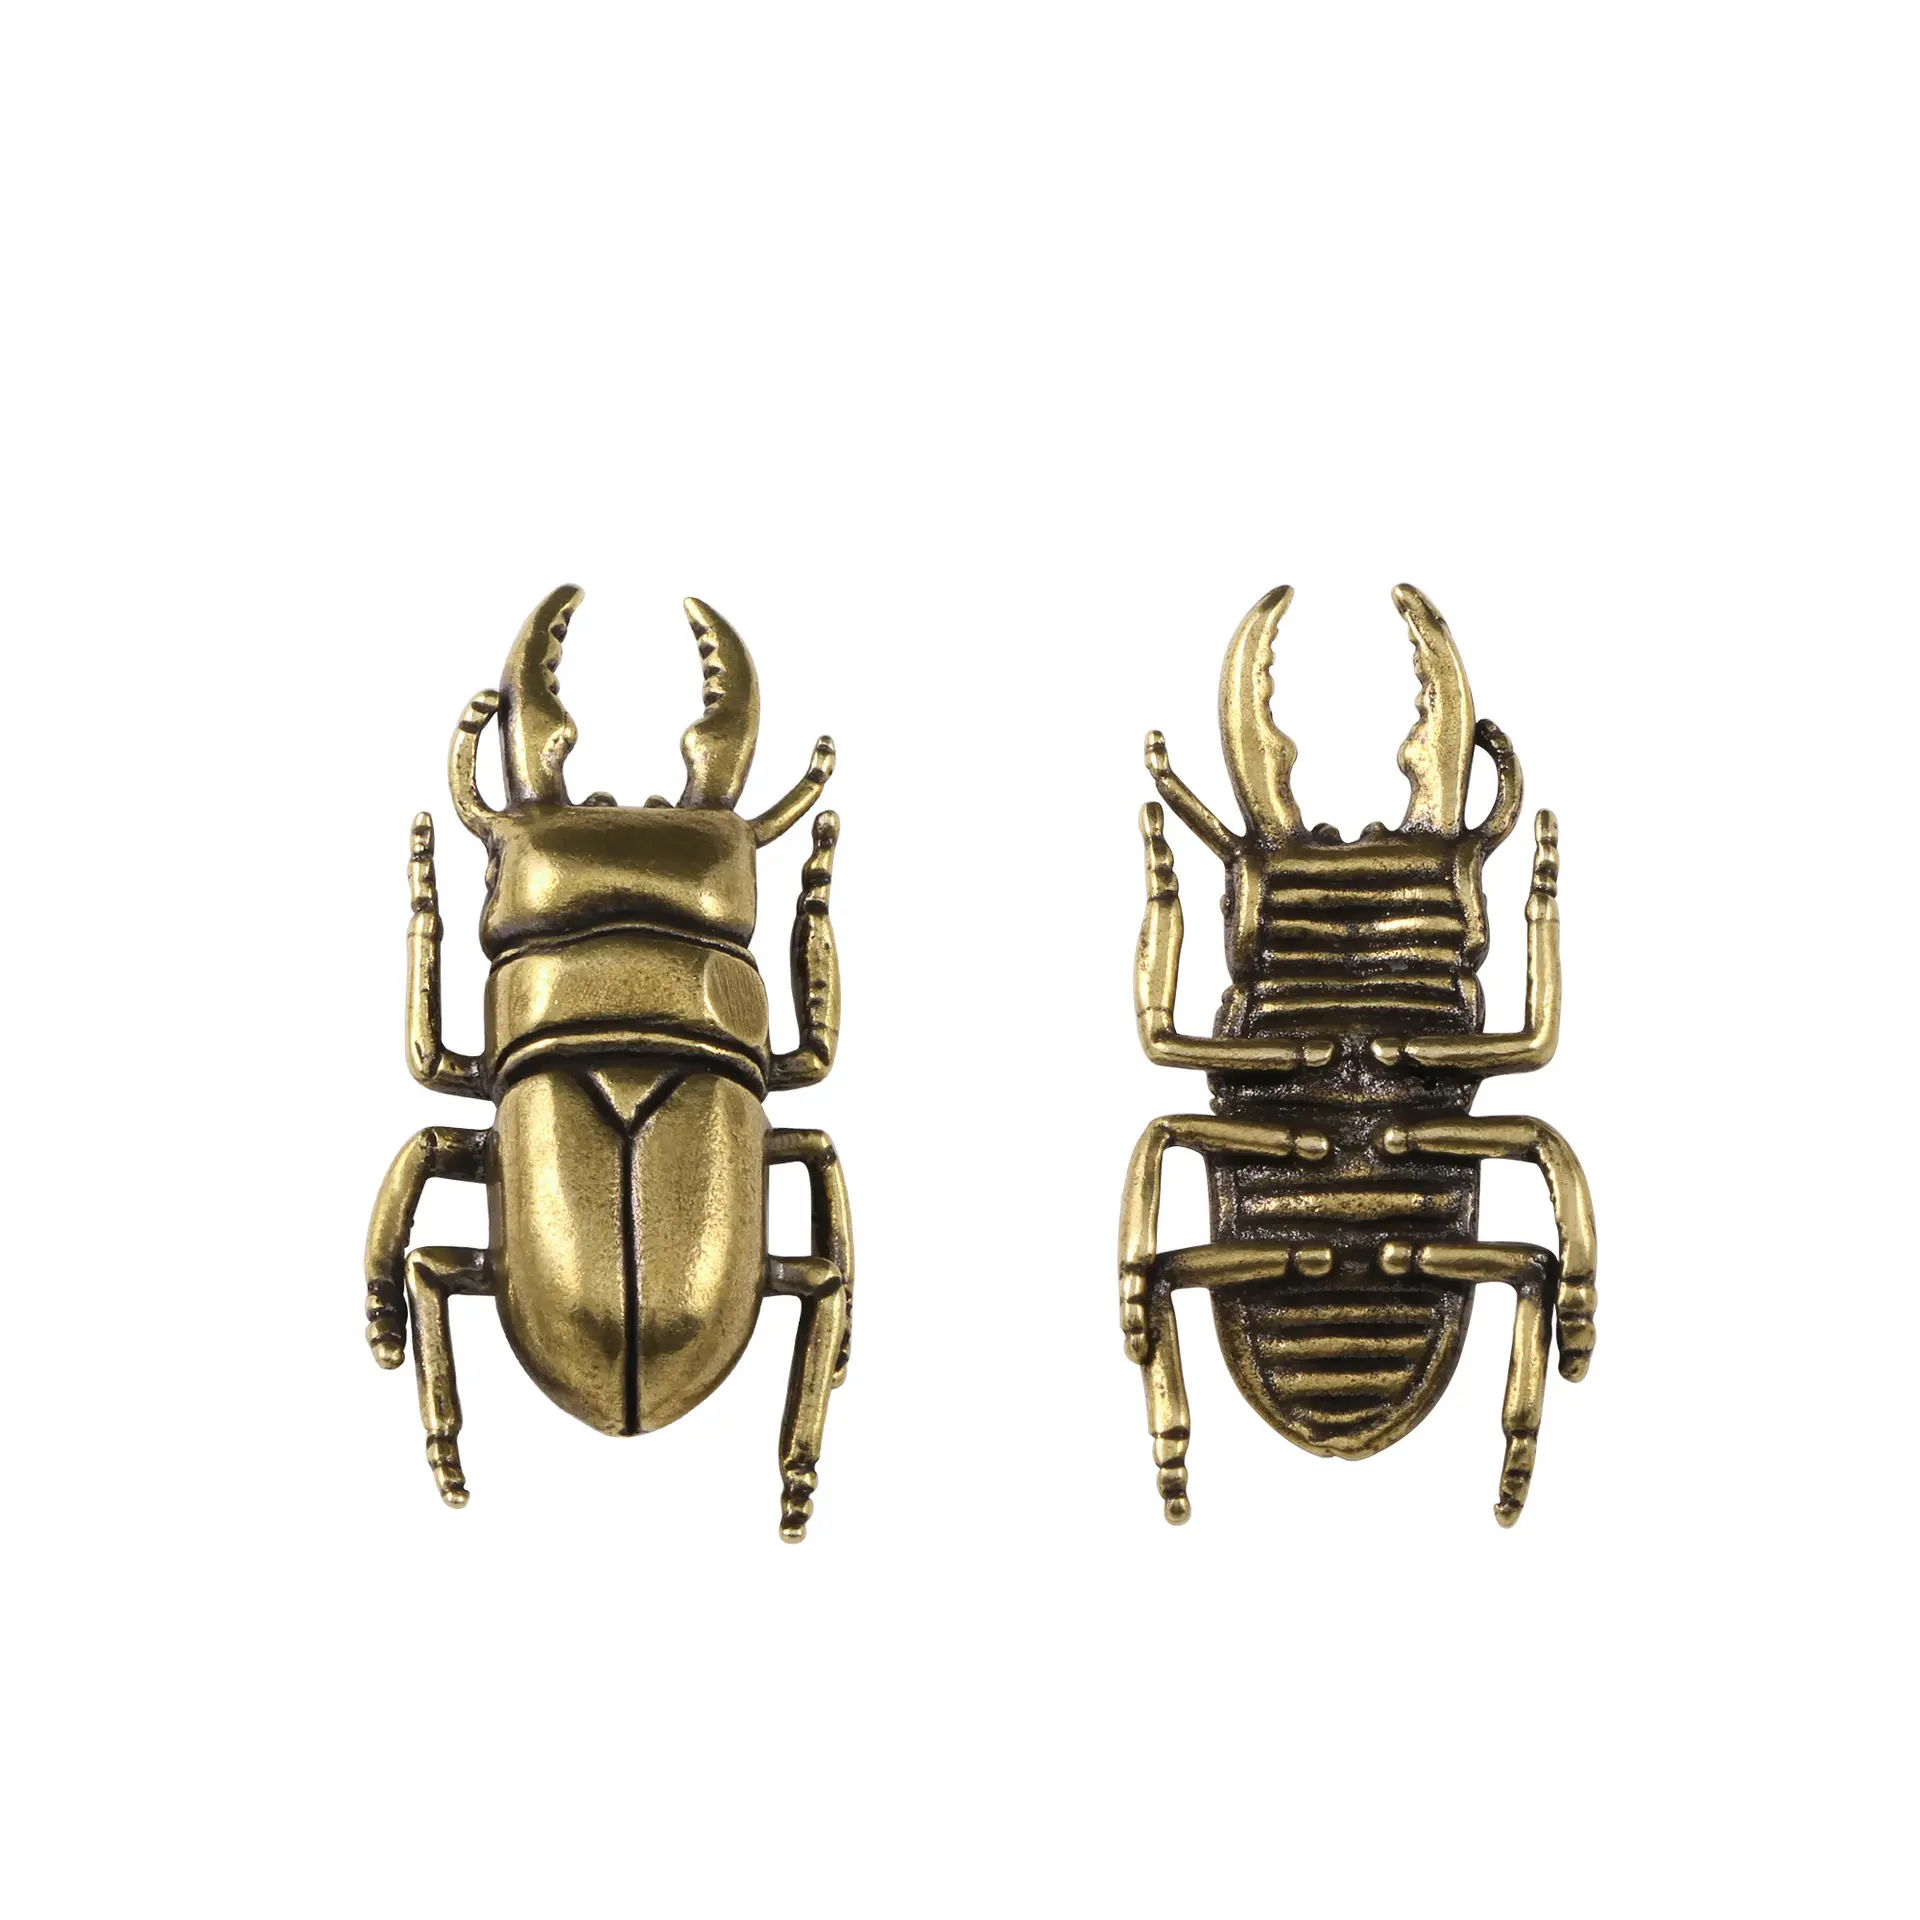 Katı pirinç beetle antika süsler yaratıcı böcek masaüstü dekorasyon hediye bakır el sanatları.